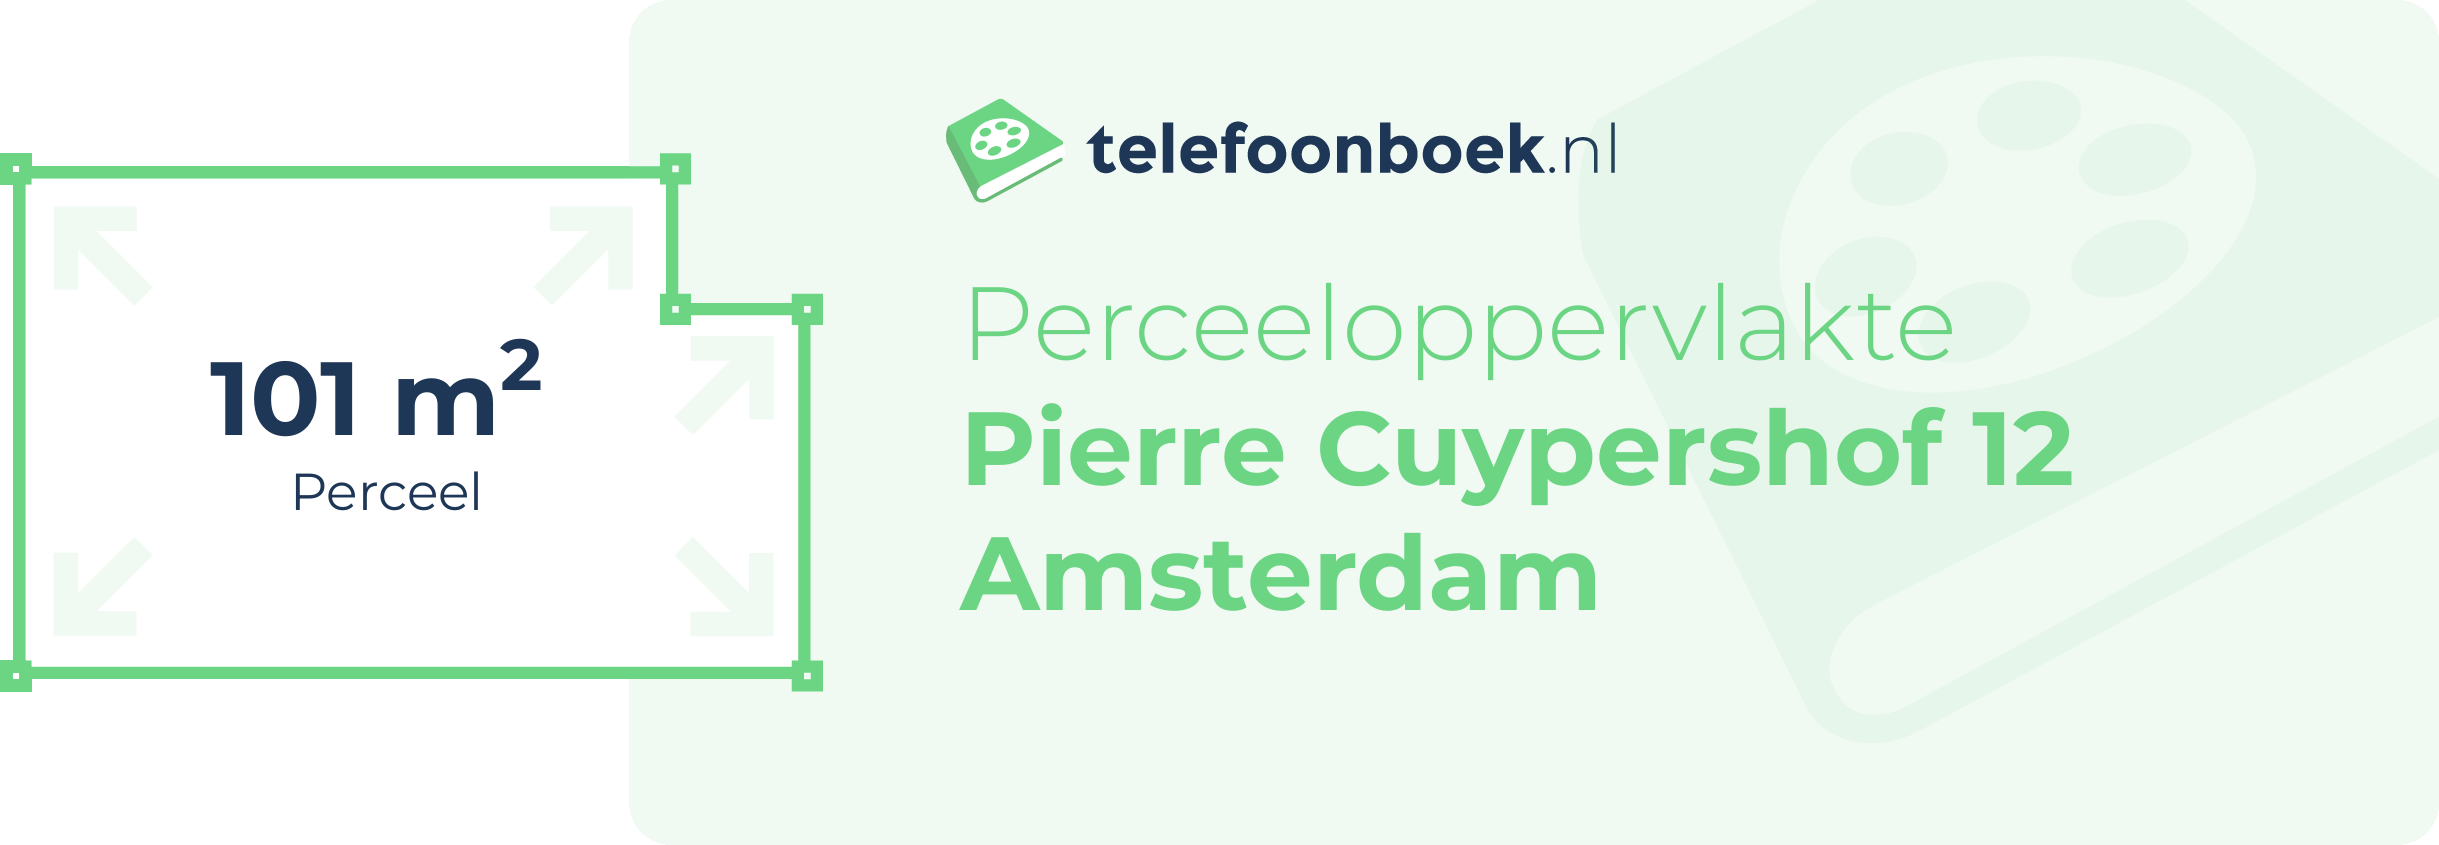 Perceeloppervlakte Pierre Cuypershof 12 Amsterdam